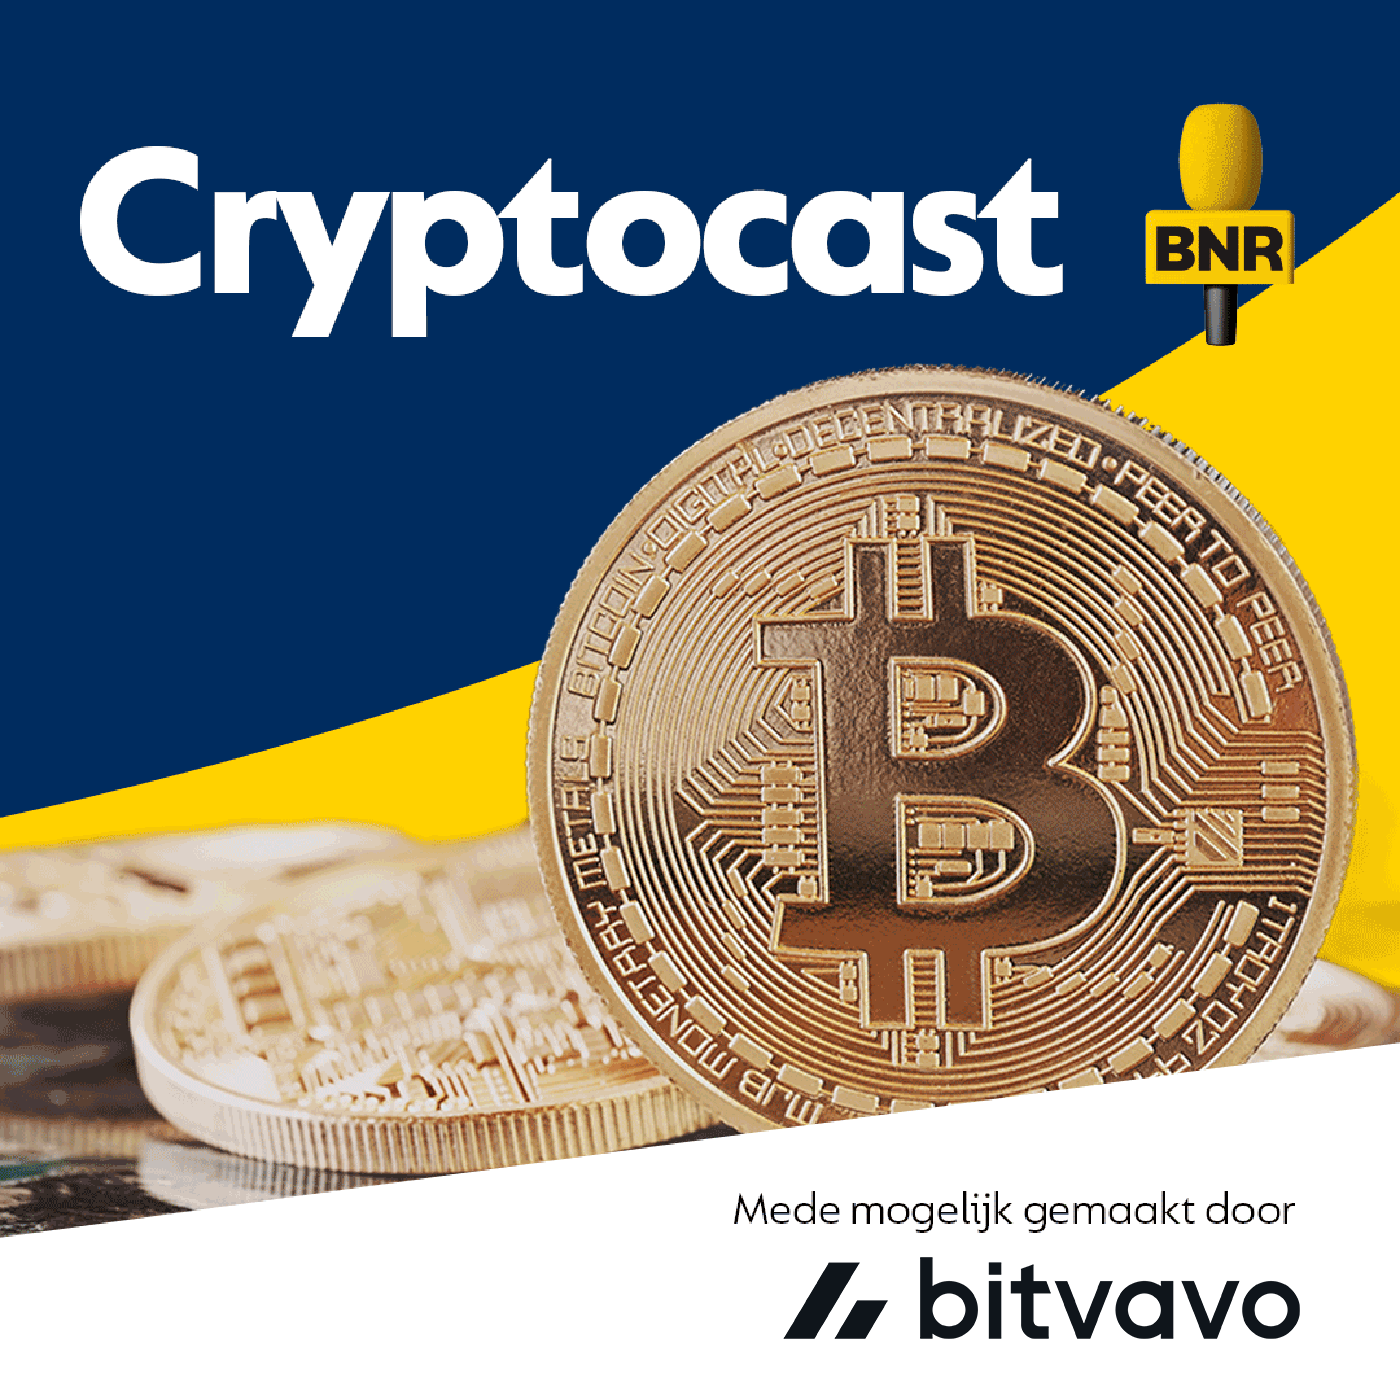 253 B: Veilig je eigen bitcoin bewaren